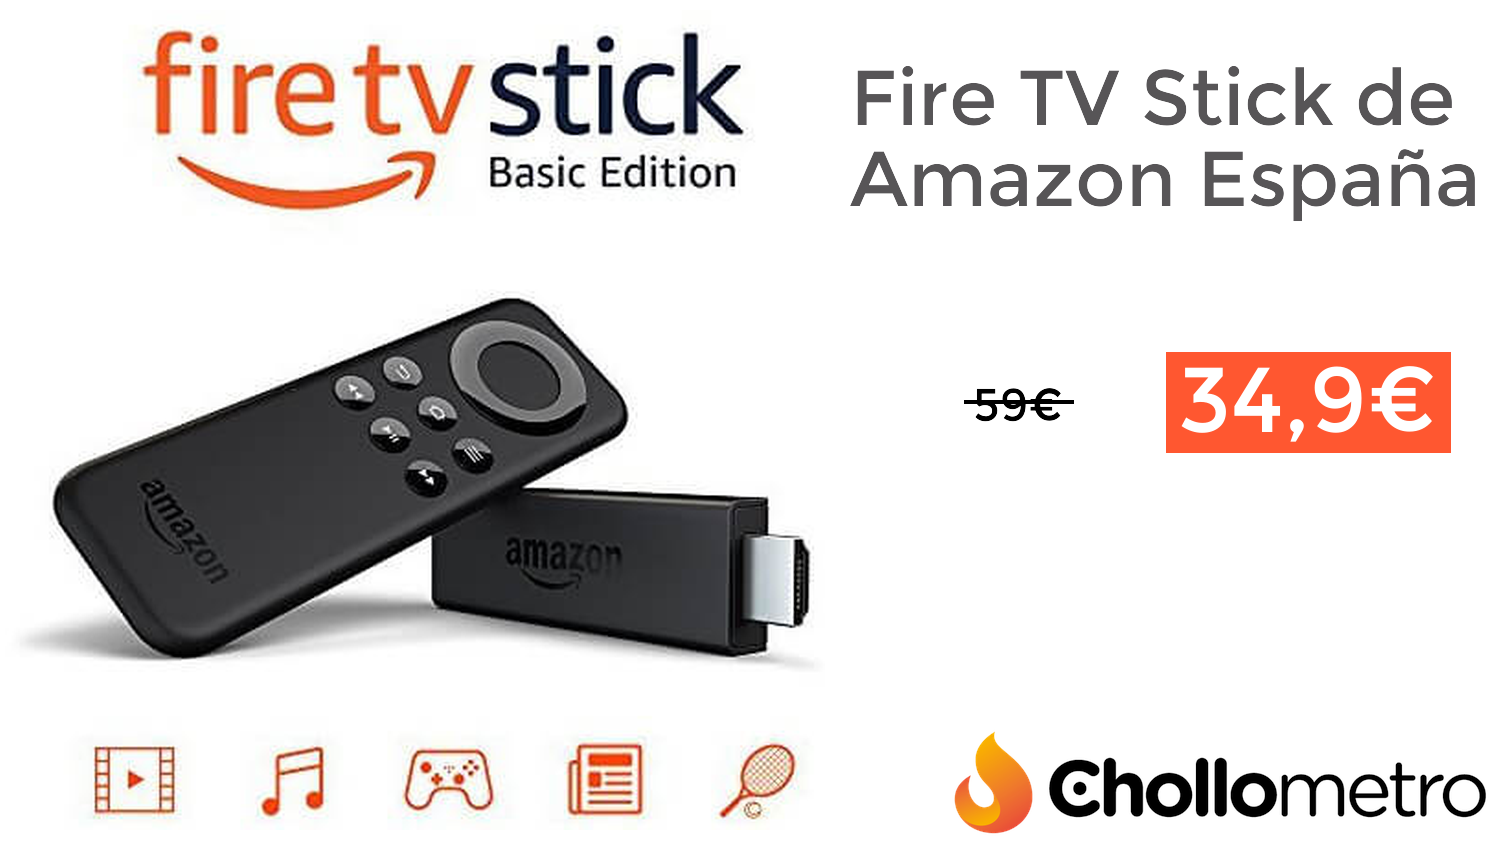 Amazon edition. TV Stick. Amazon Fire TV Stick detals. Fire TV Stick details.